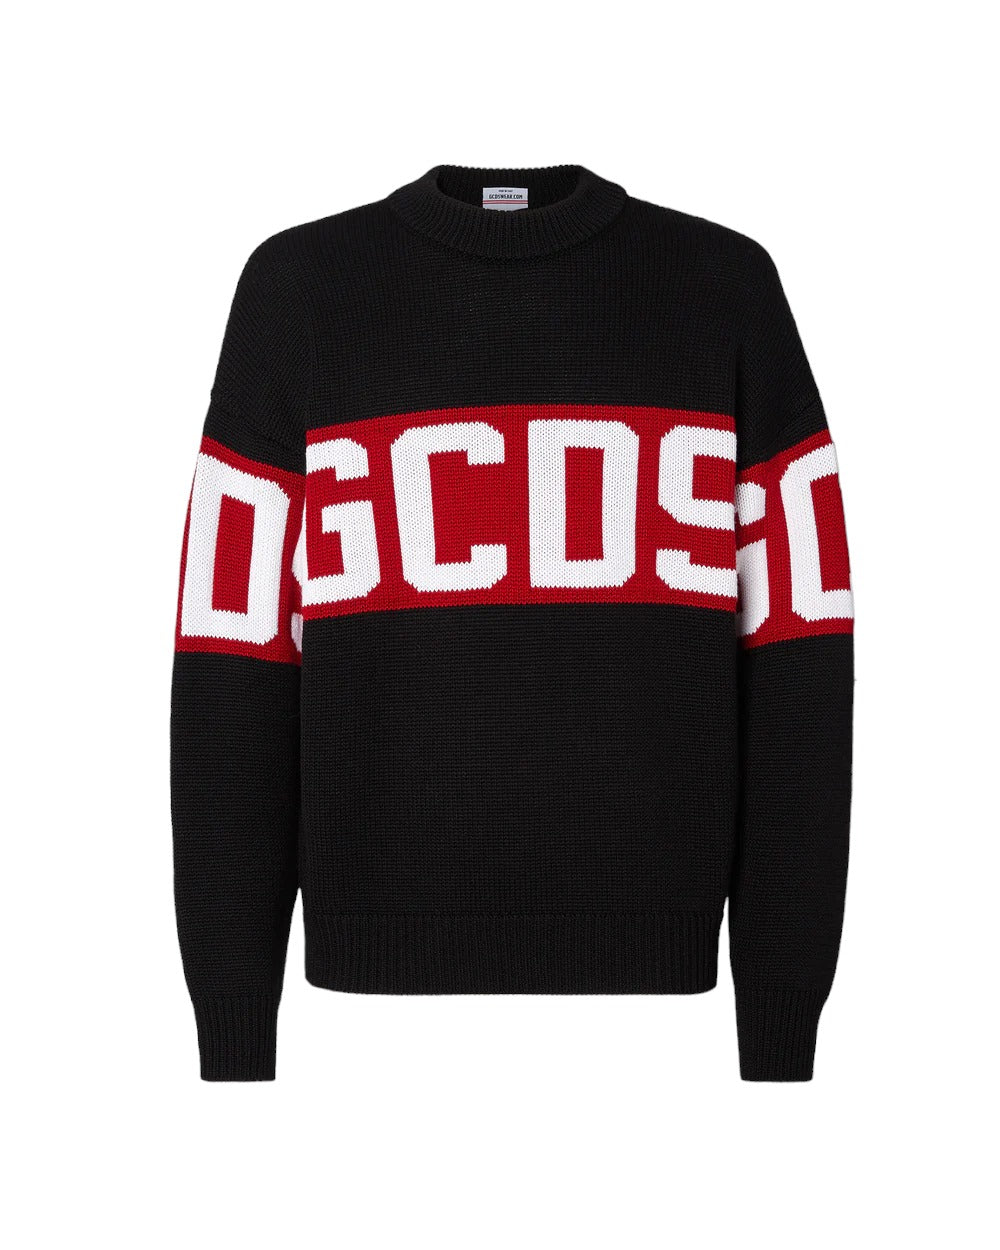 GCDS Men's Sweater